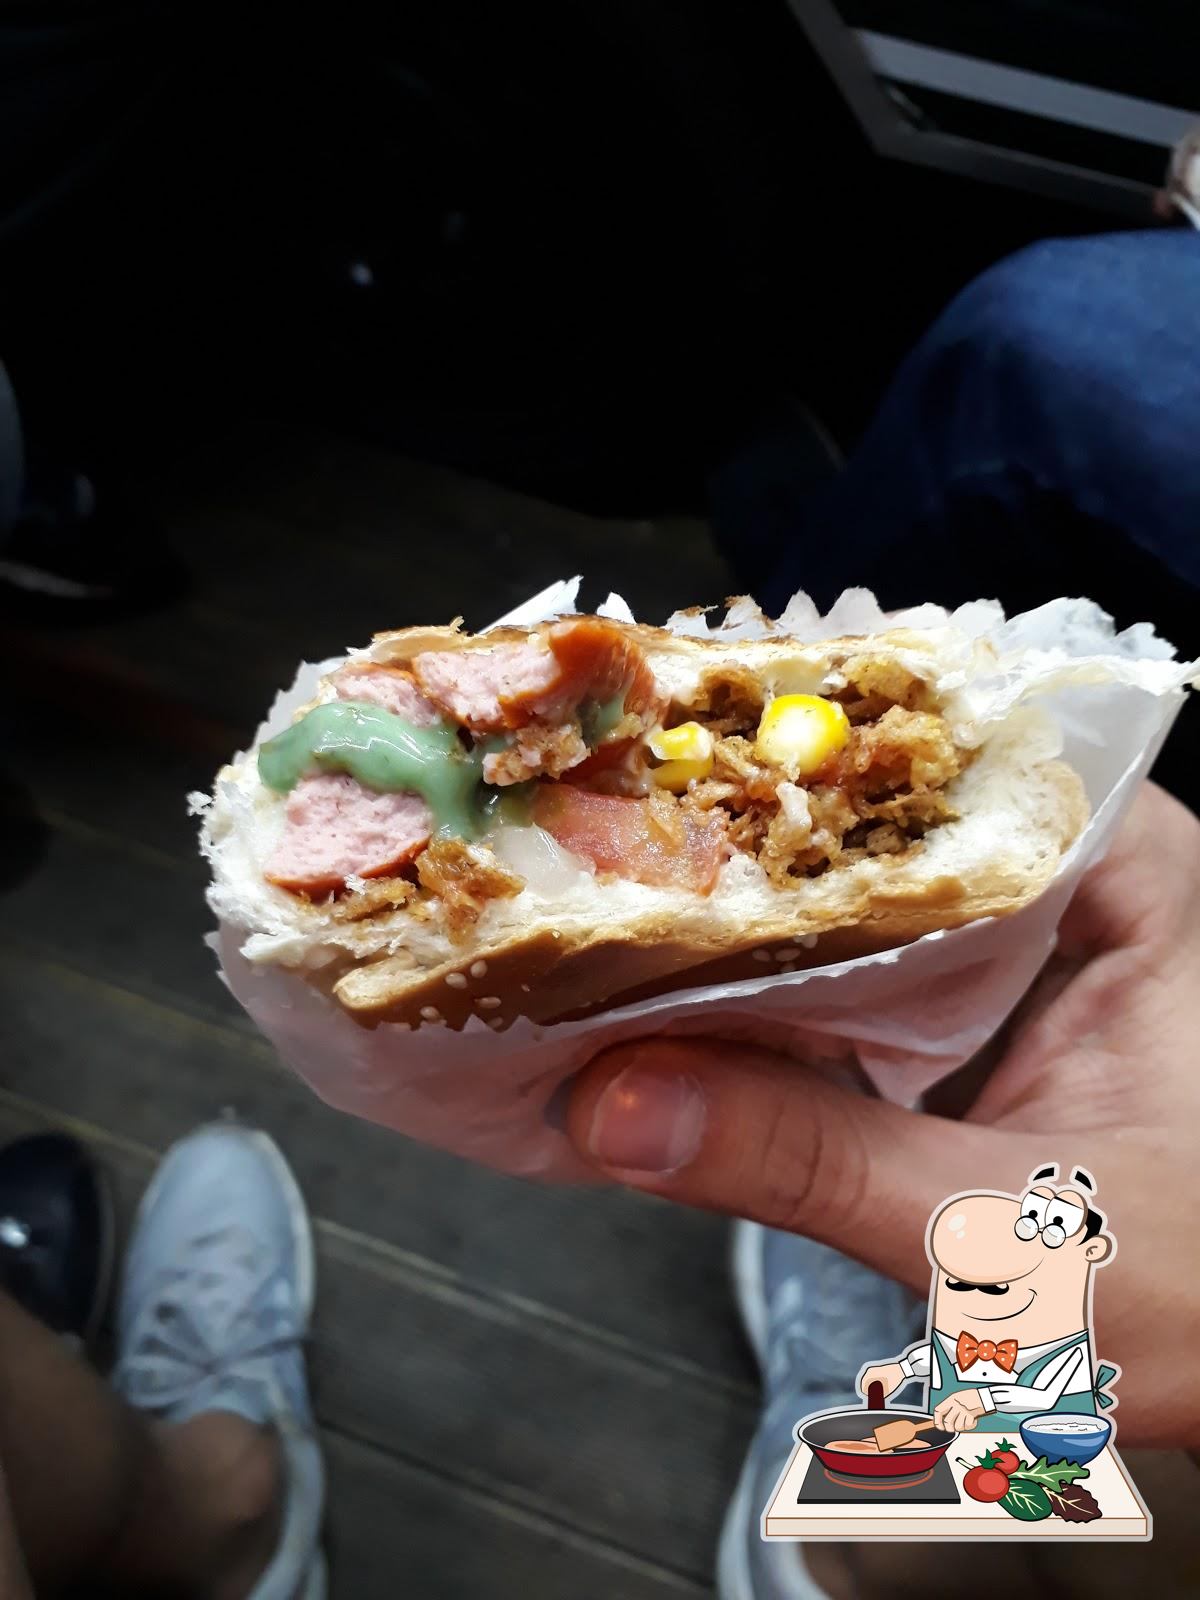 Pirata's Hot Dog - o melhor hot dog de Curitiba Menu, Avaliações e